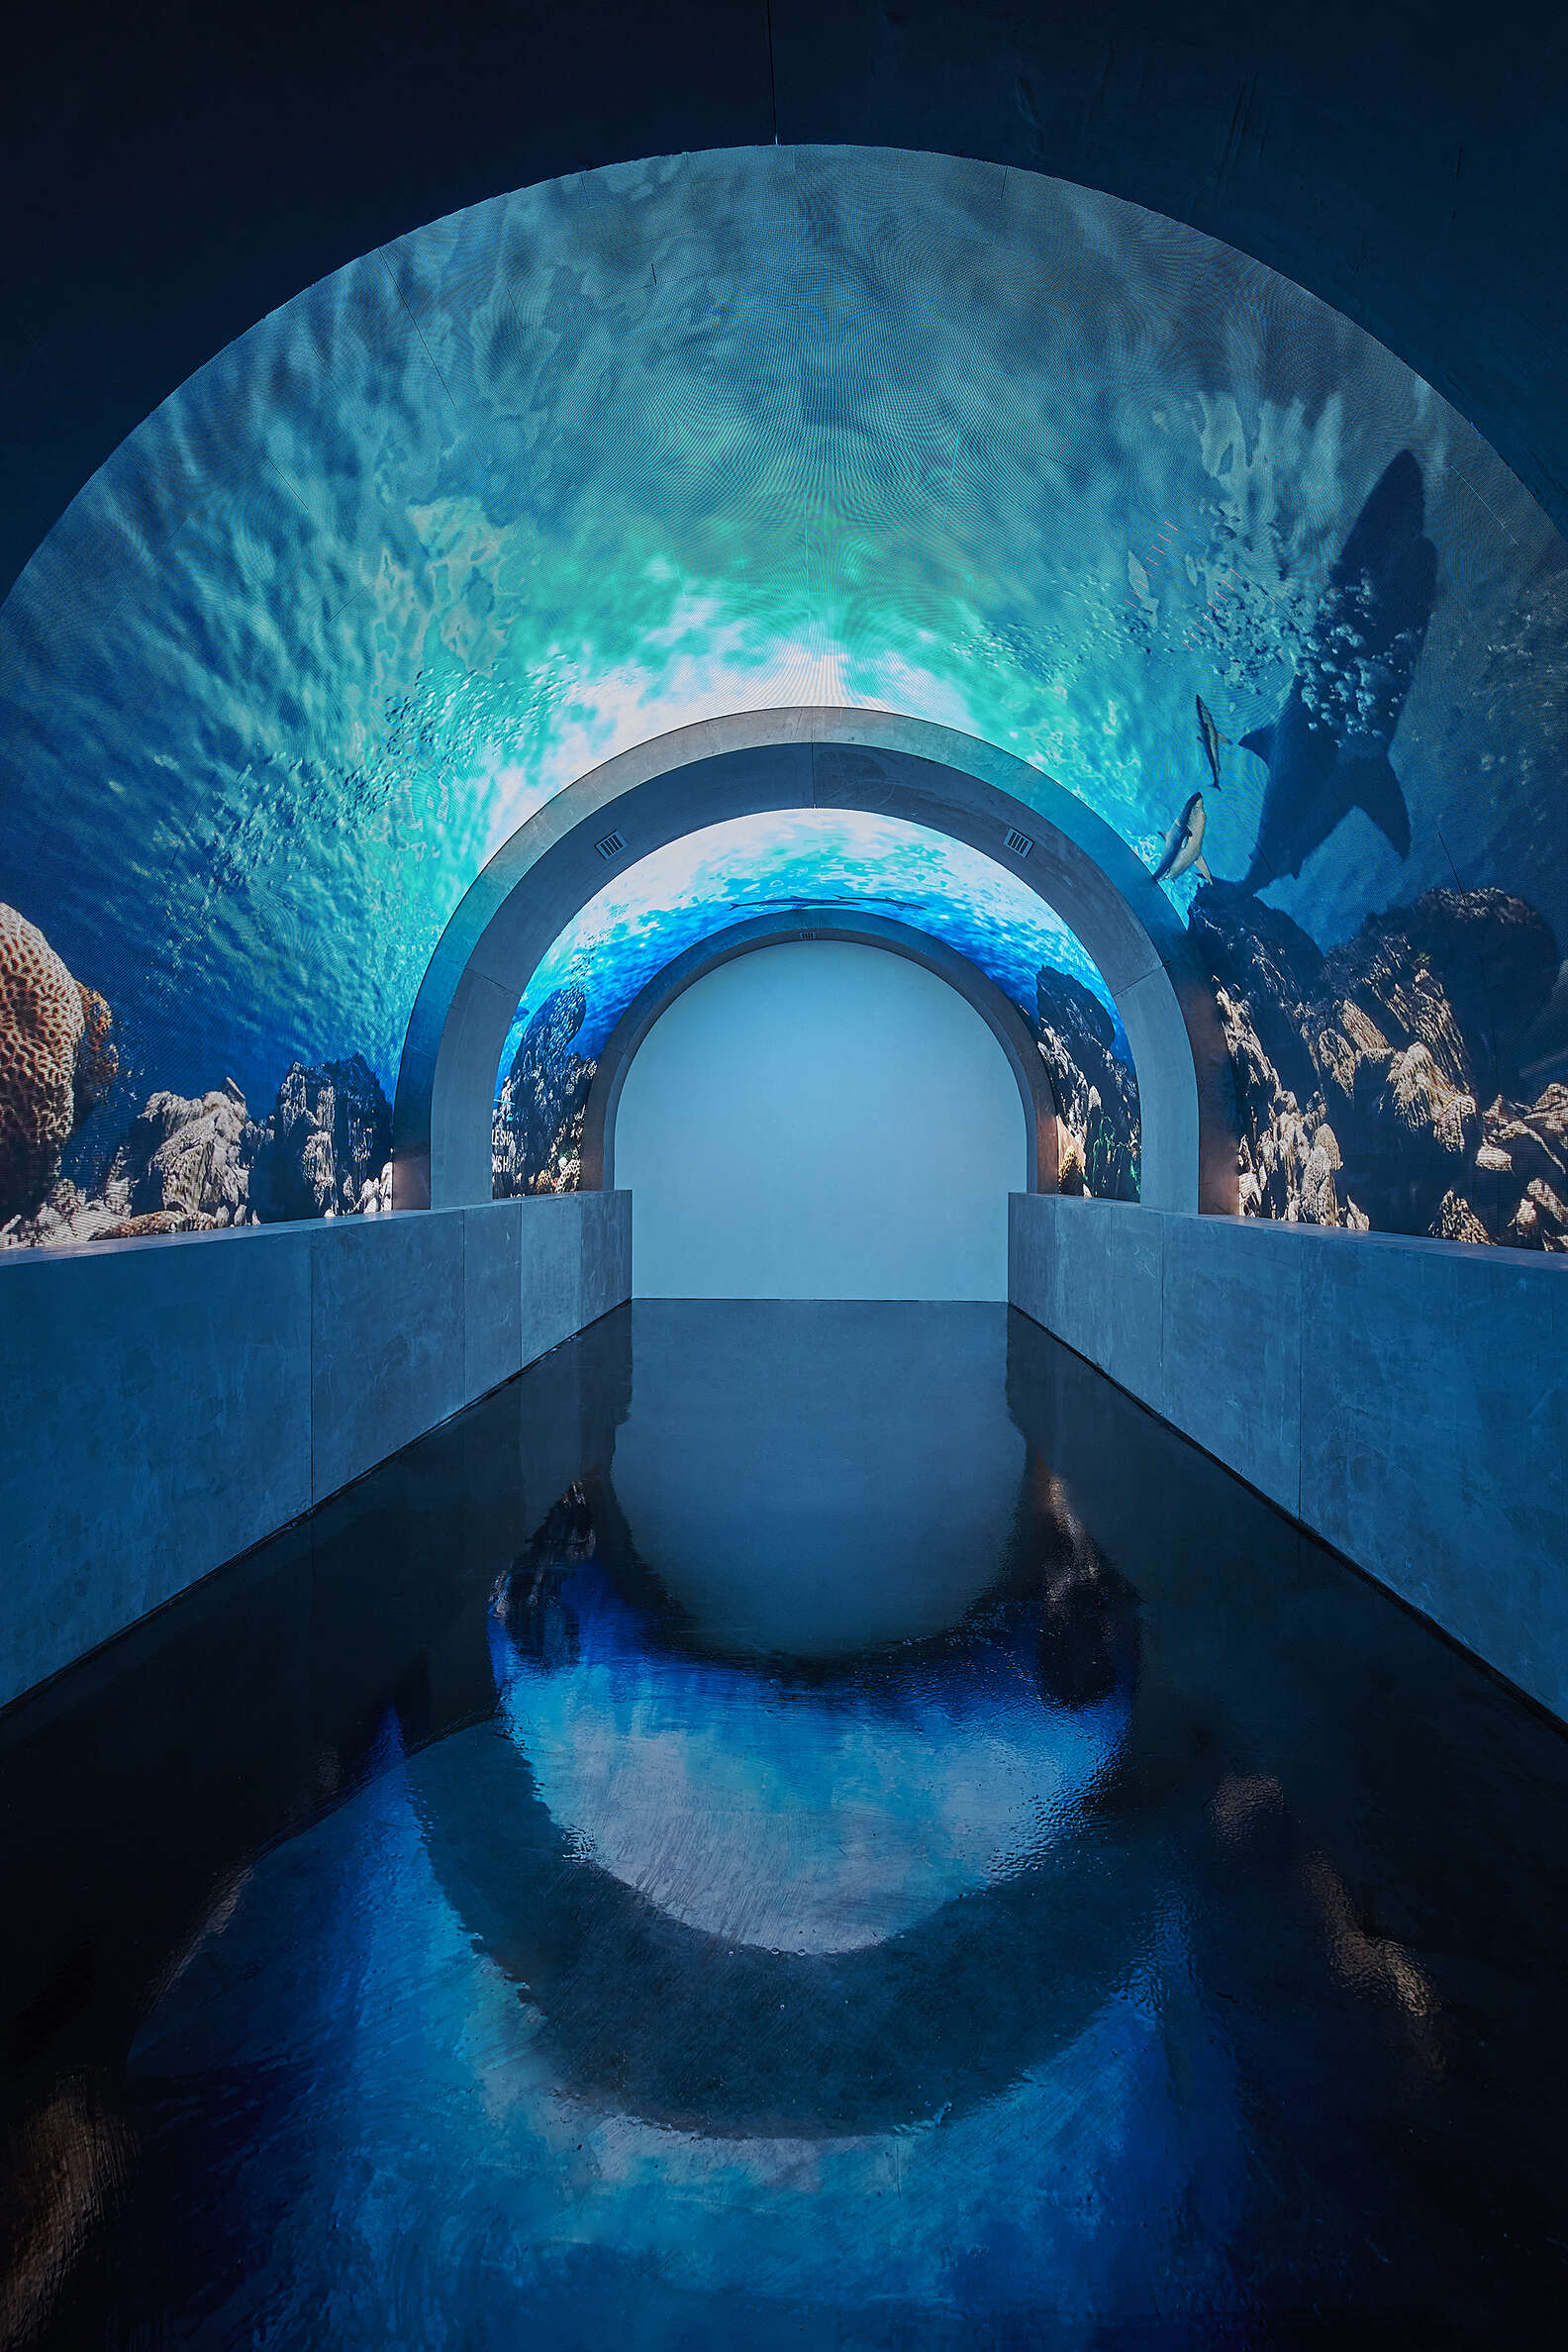 Take a tunnel through the CGI aquarium. No water necessary.